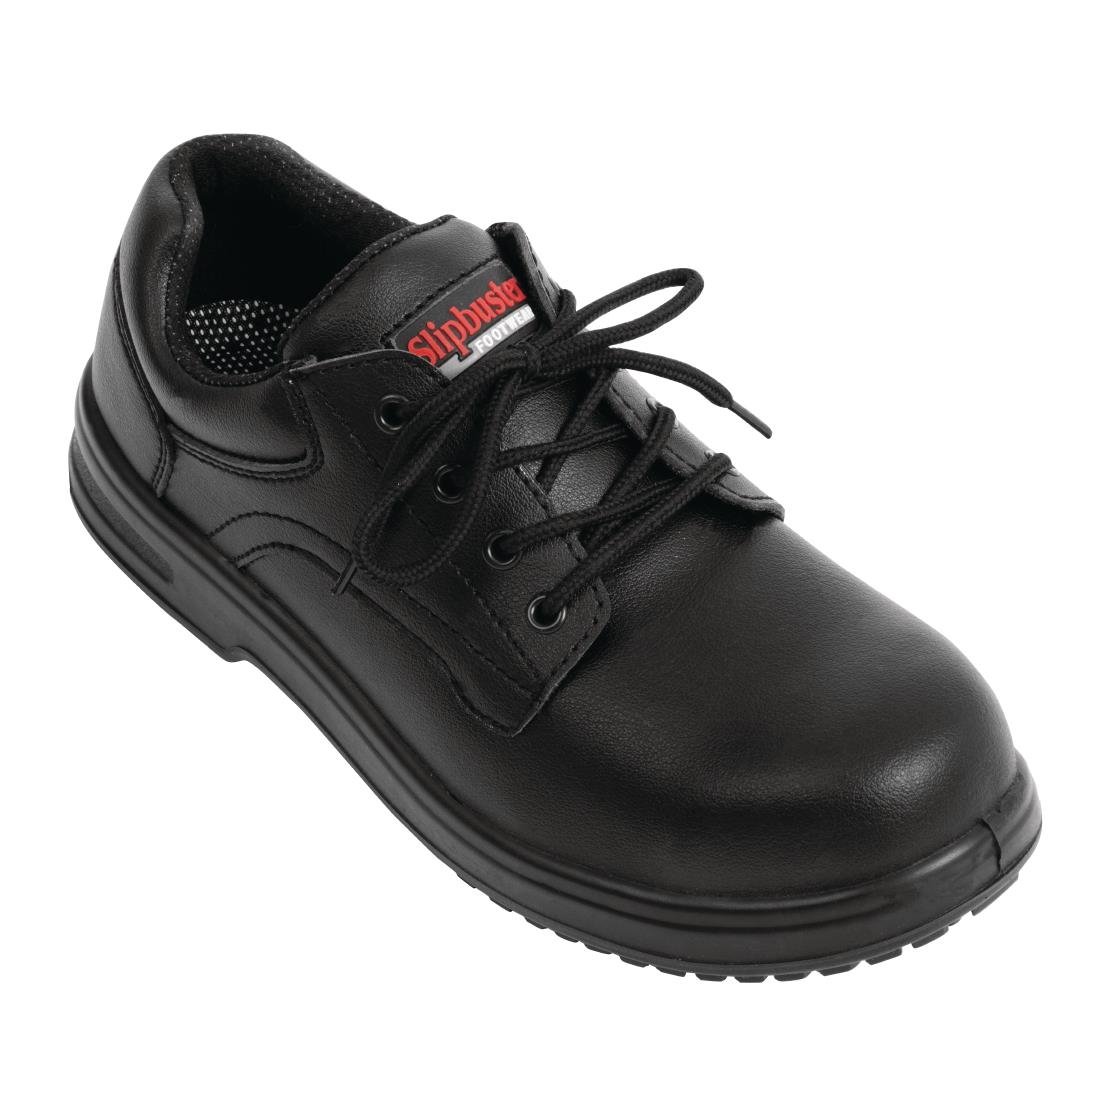 BB498-45 Slipbuster Basic Shoes Slip Resistant Black 45 JD Catering Equipment Solutions Ltd